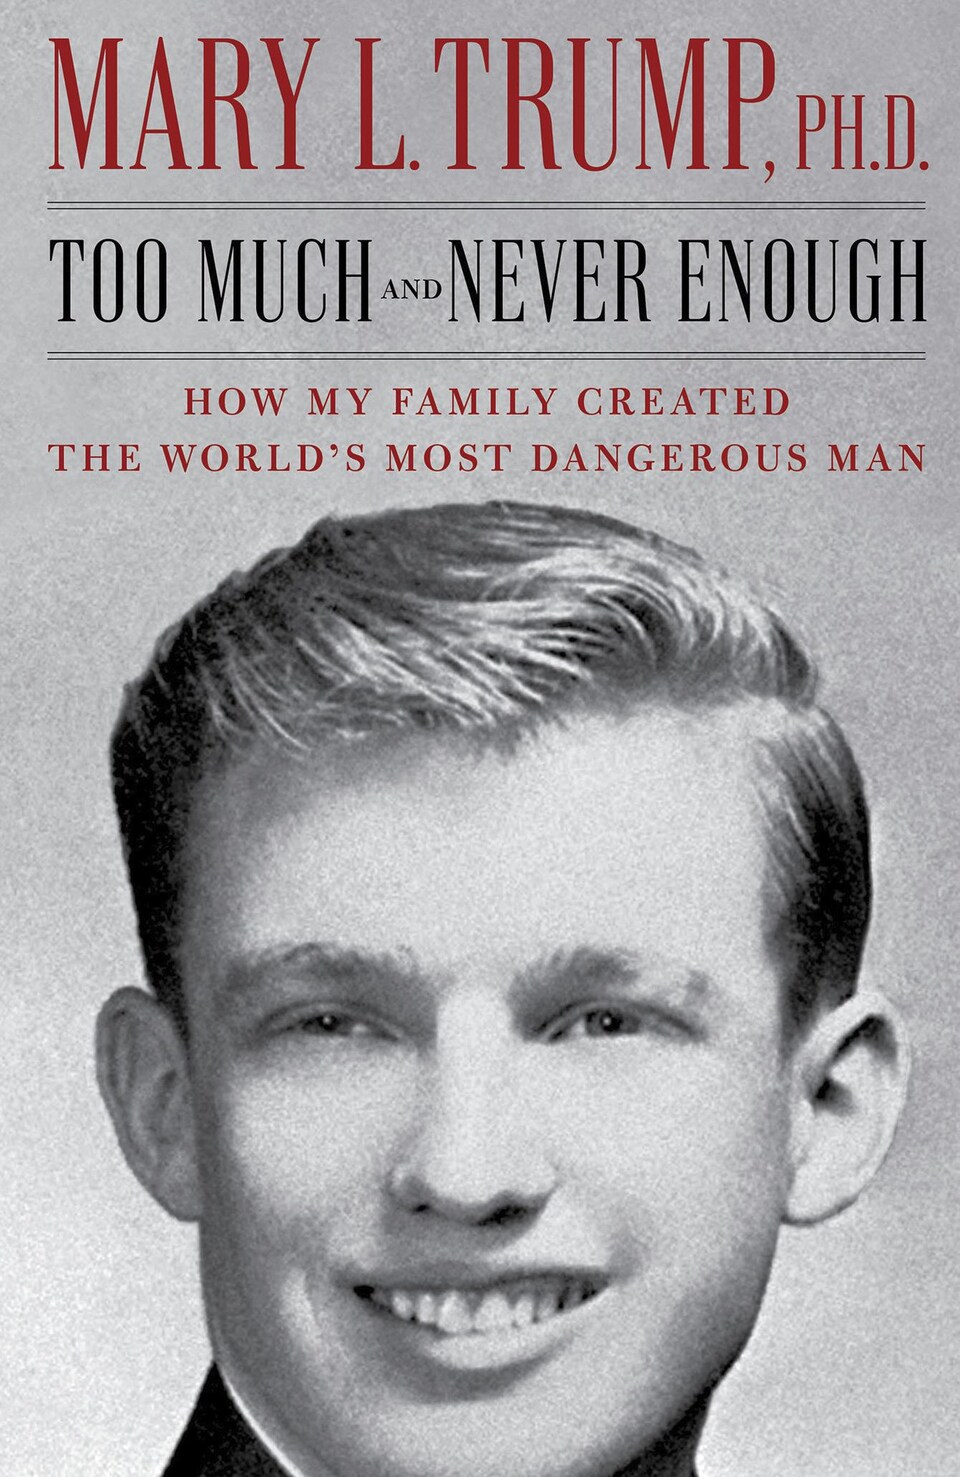 La page couverture du livre « Trop et jamais assez : comment ma famille a créé l'homme le plus dangereux du monde », en noir et blanc, montre un Donald Trump plus jeune, souriant.